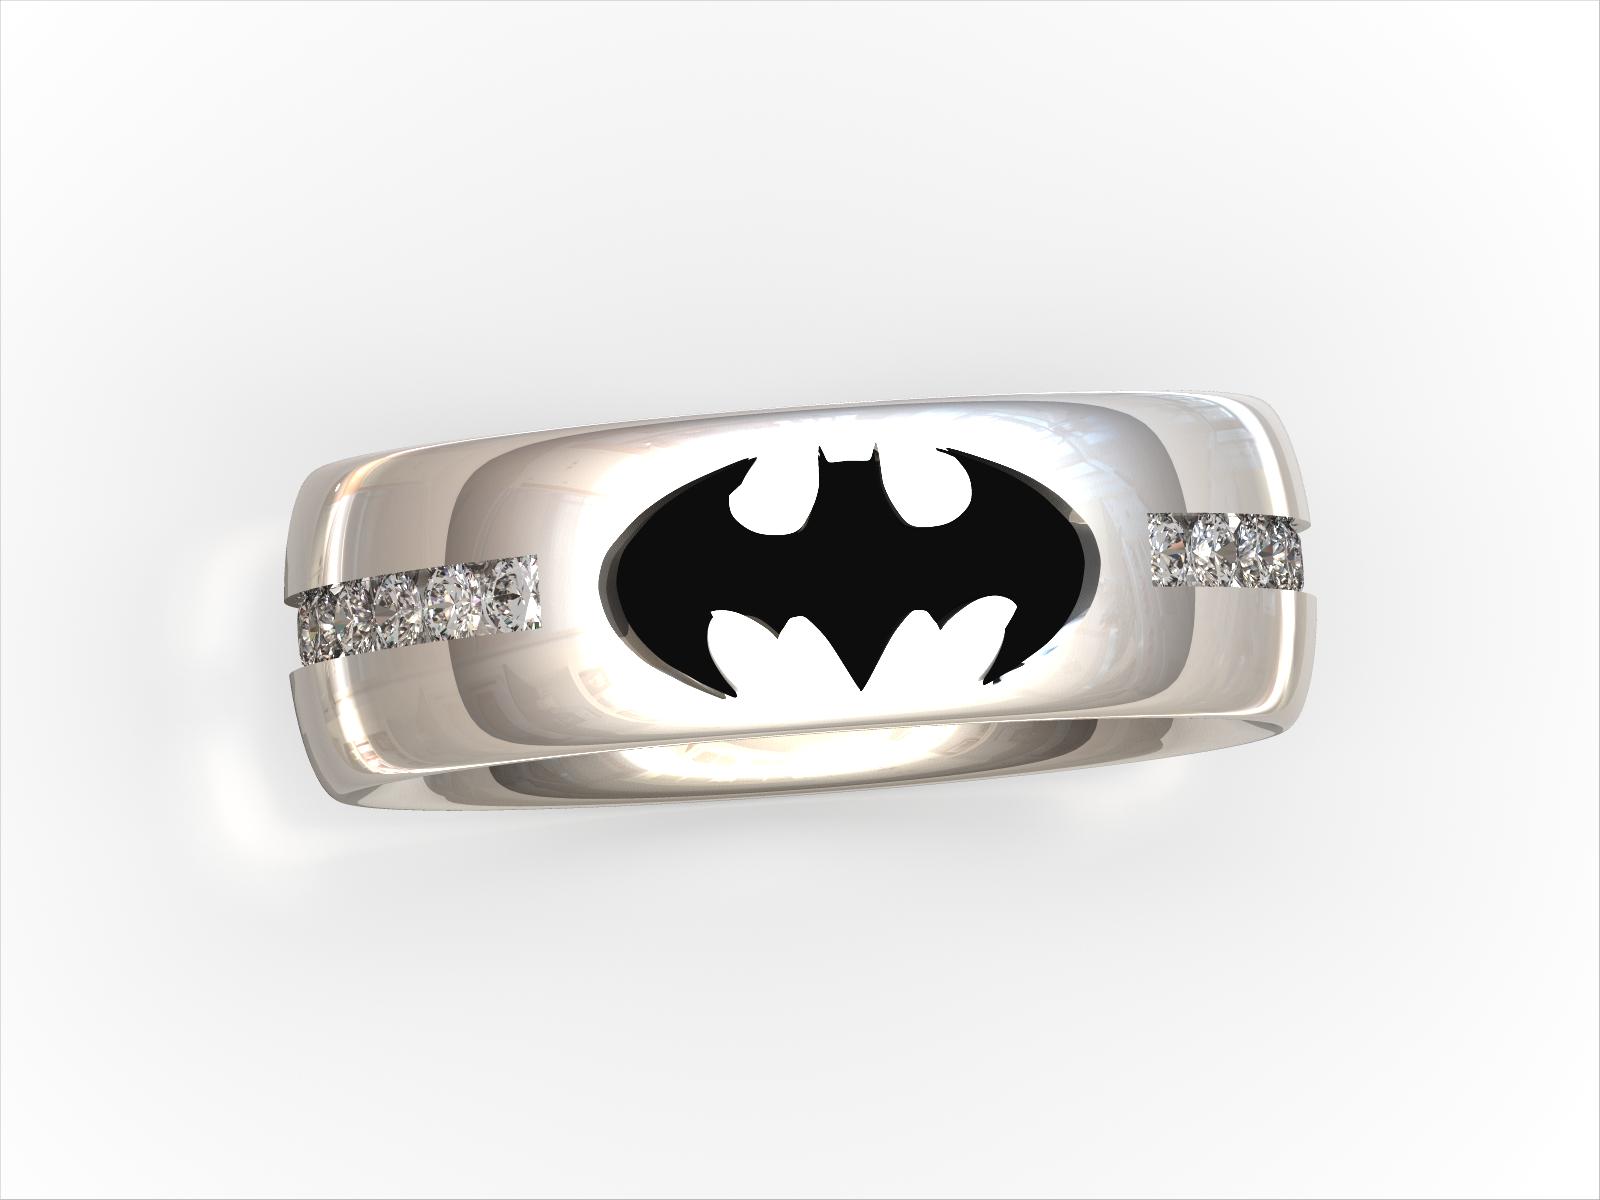 diamond bat earrings - Google Search | ShopLook